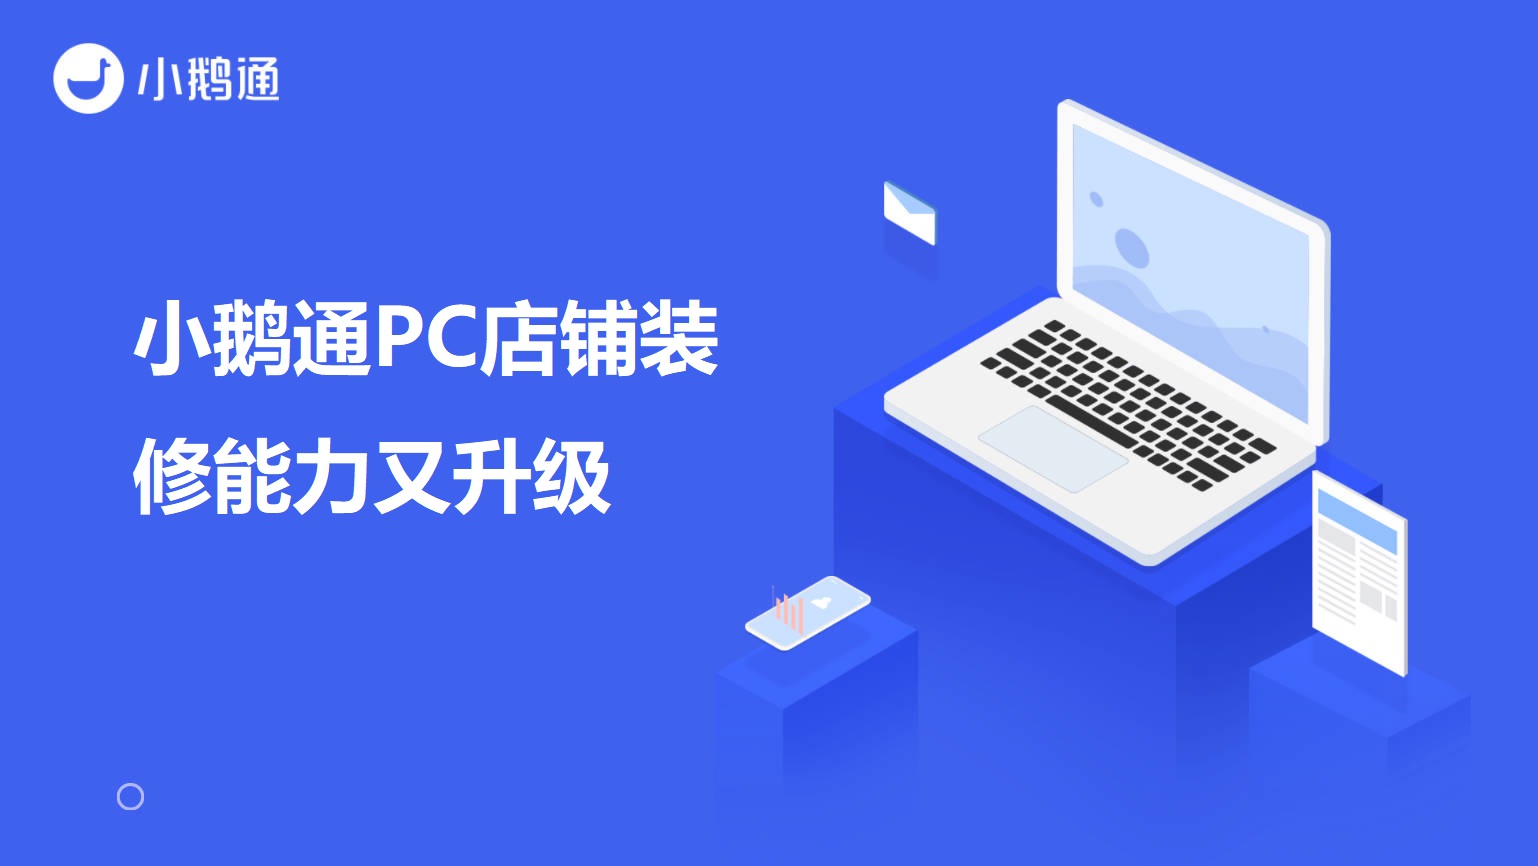 辉南小鹅通PC店铺装修能力又升级啦！自定义背景色、课程分类、直播等组件优化！